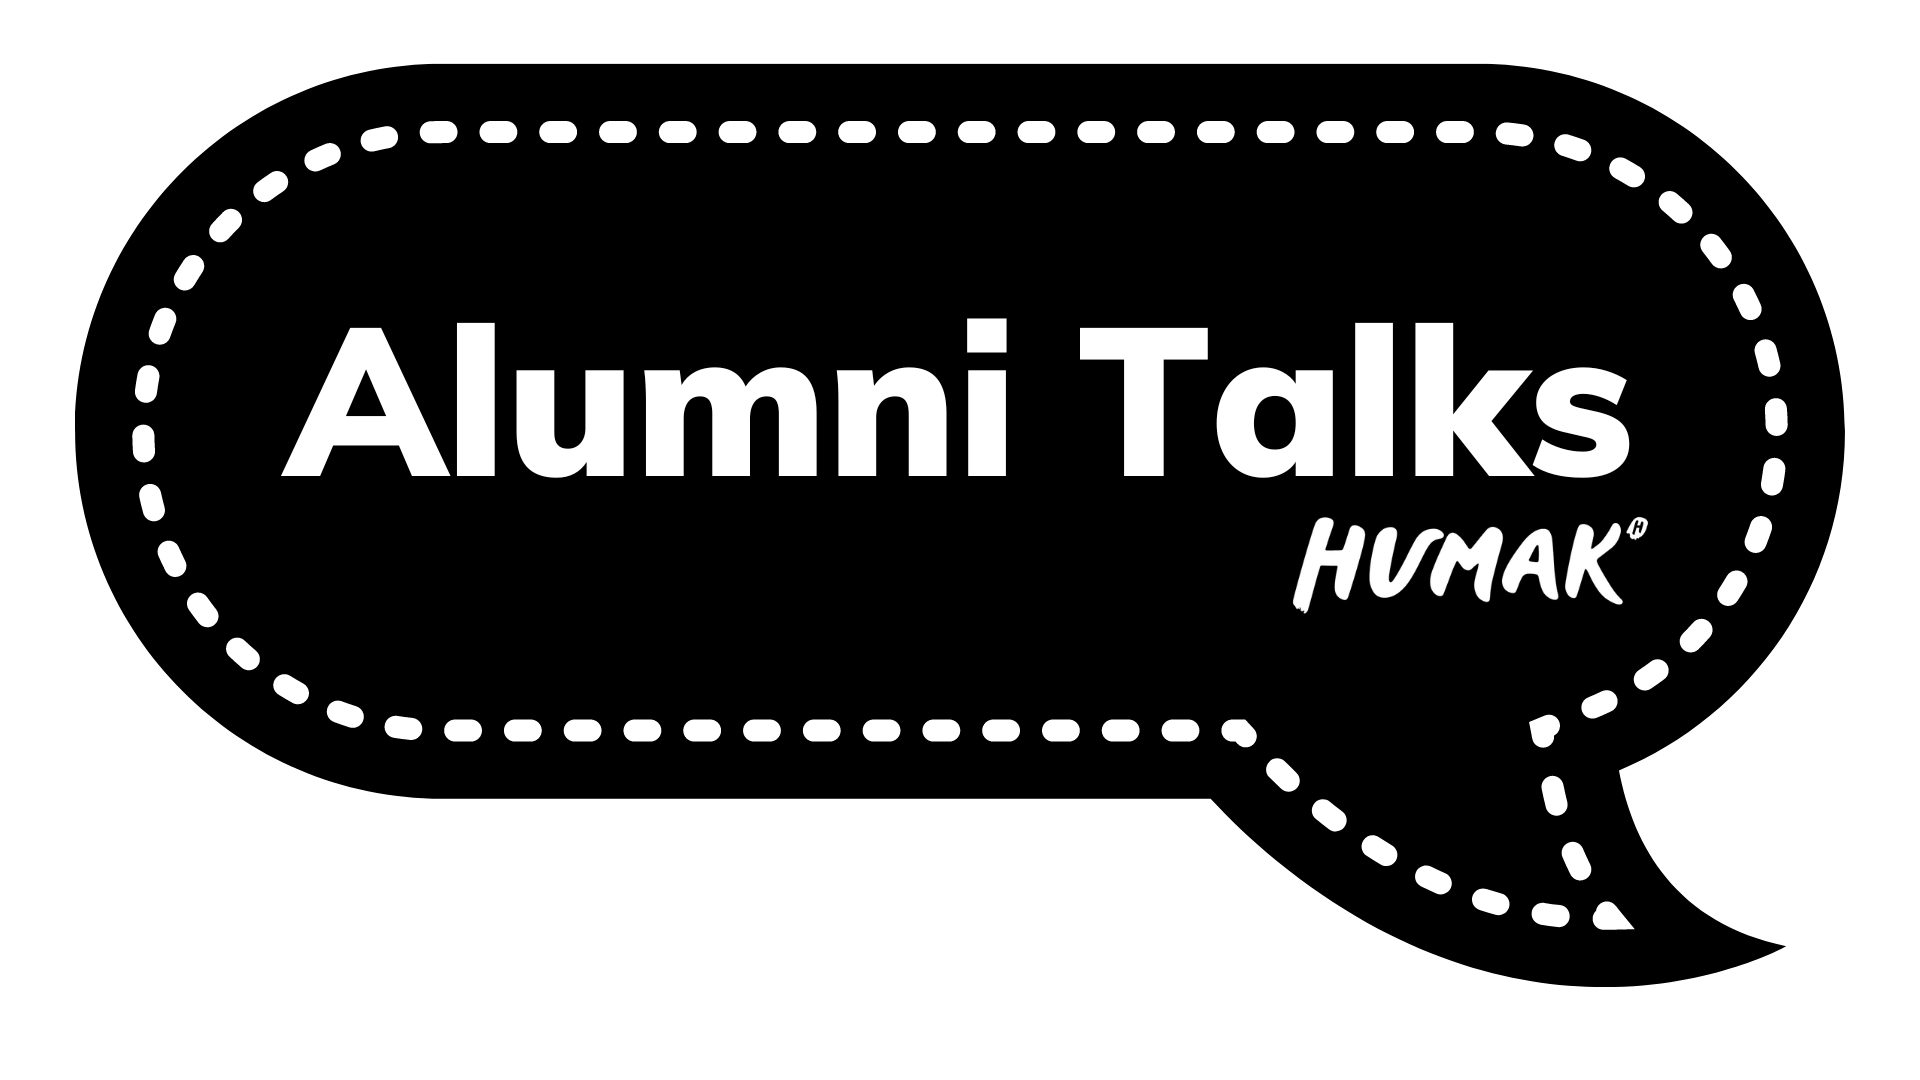 Alumni Talks 6.6. kello 14 käsittelee representaatiota – millainen on vaikutuksemme mielikuviin ja ajatuksiin?